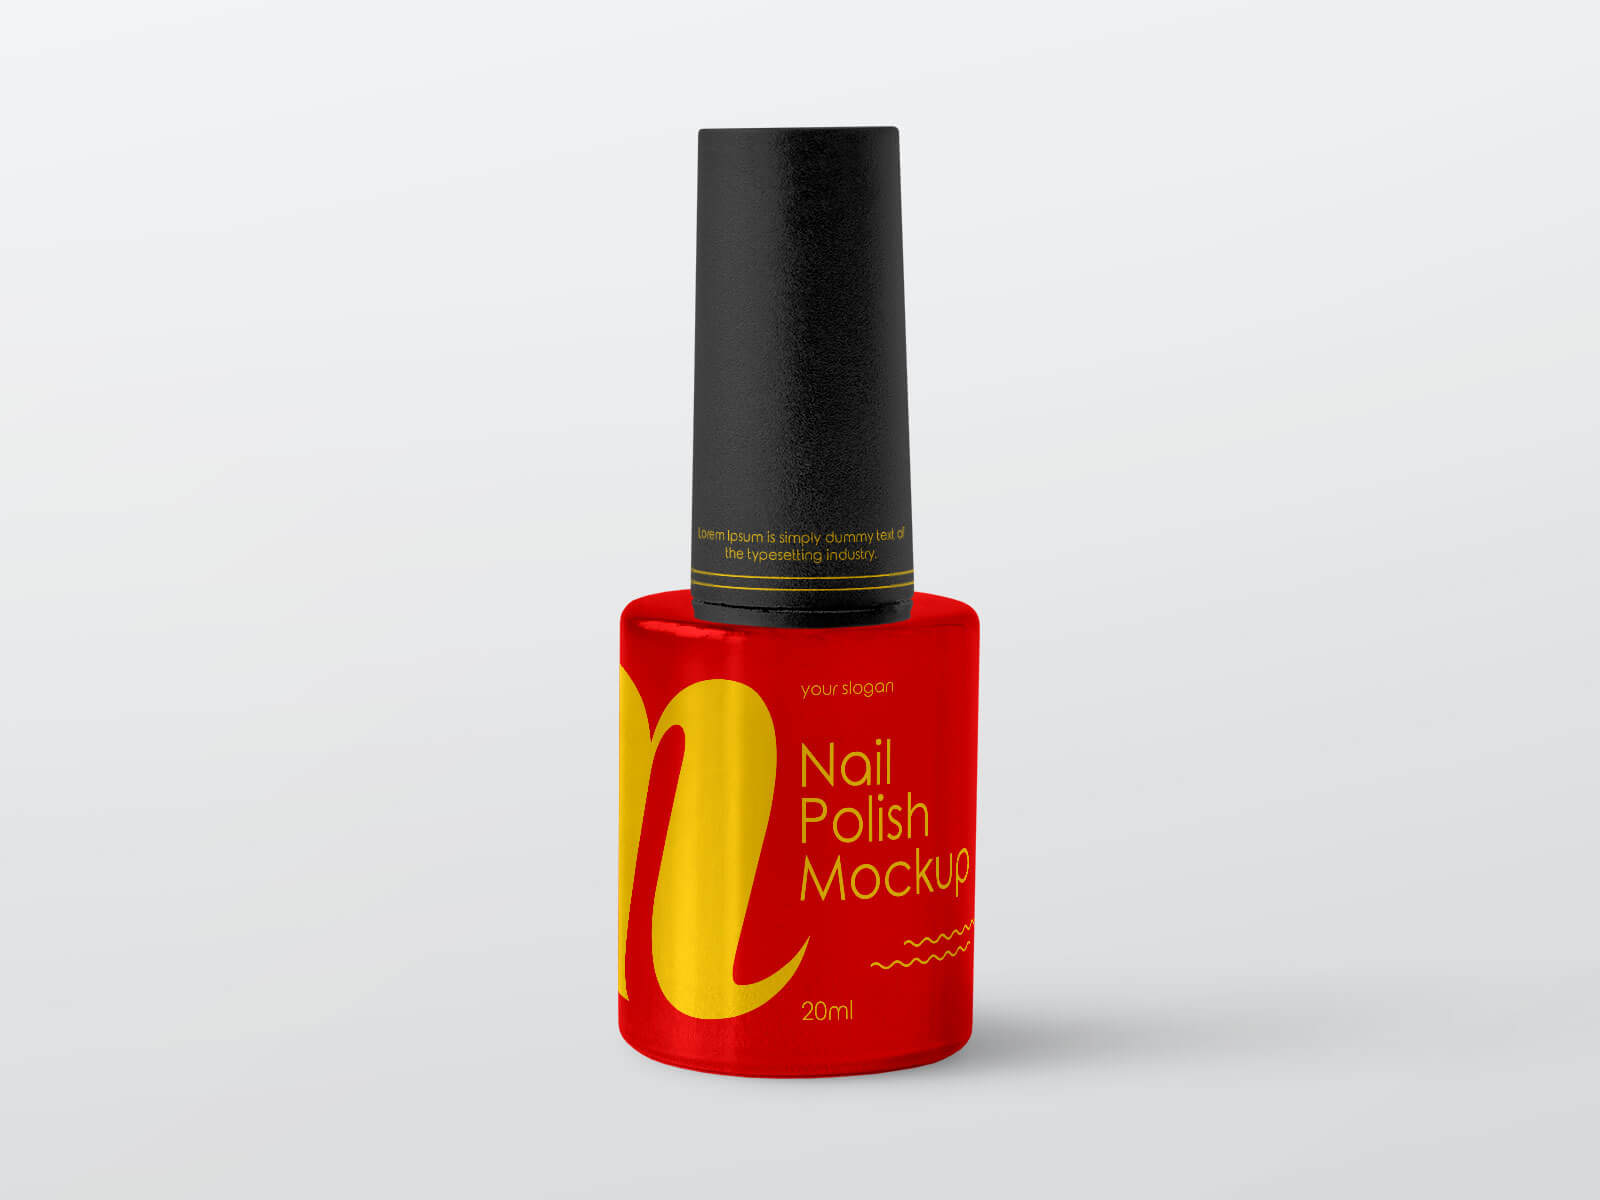 9. Nail Polish Bottle Mockup Design - wide 9